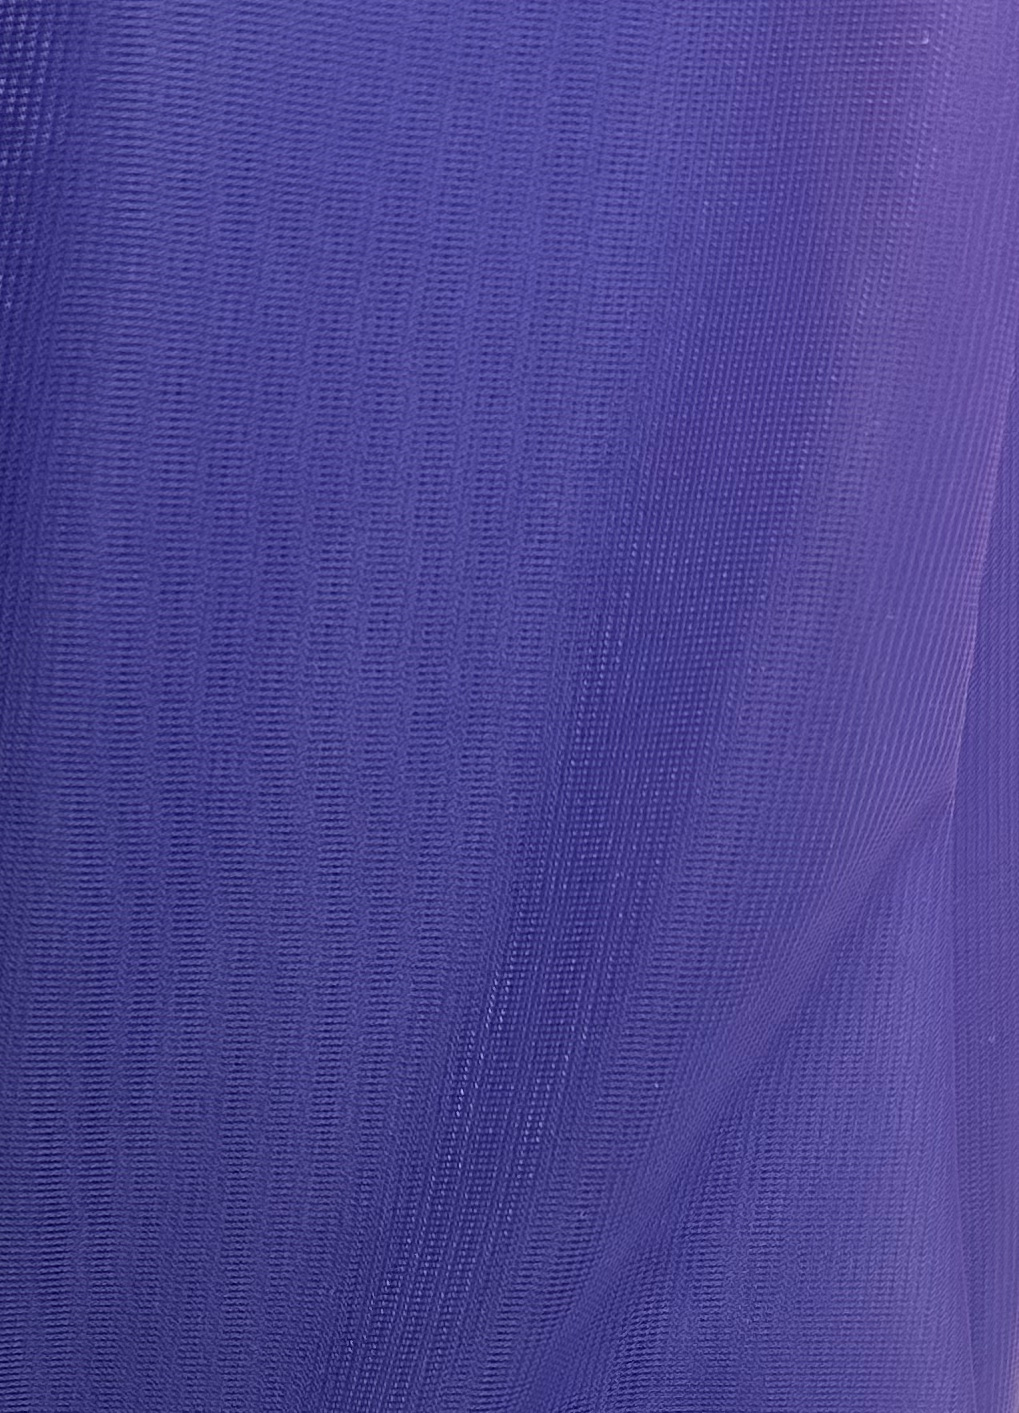 Purple Nylon Chiffon Fabric